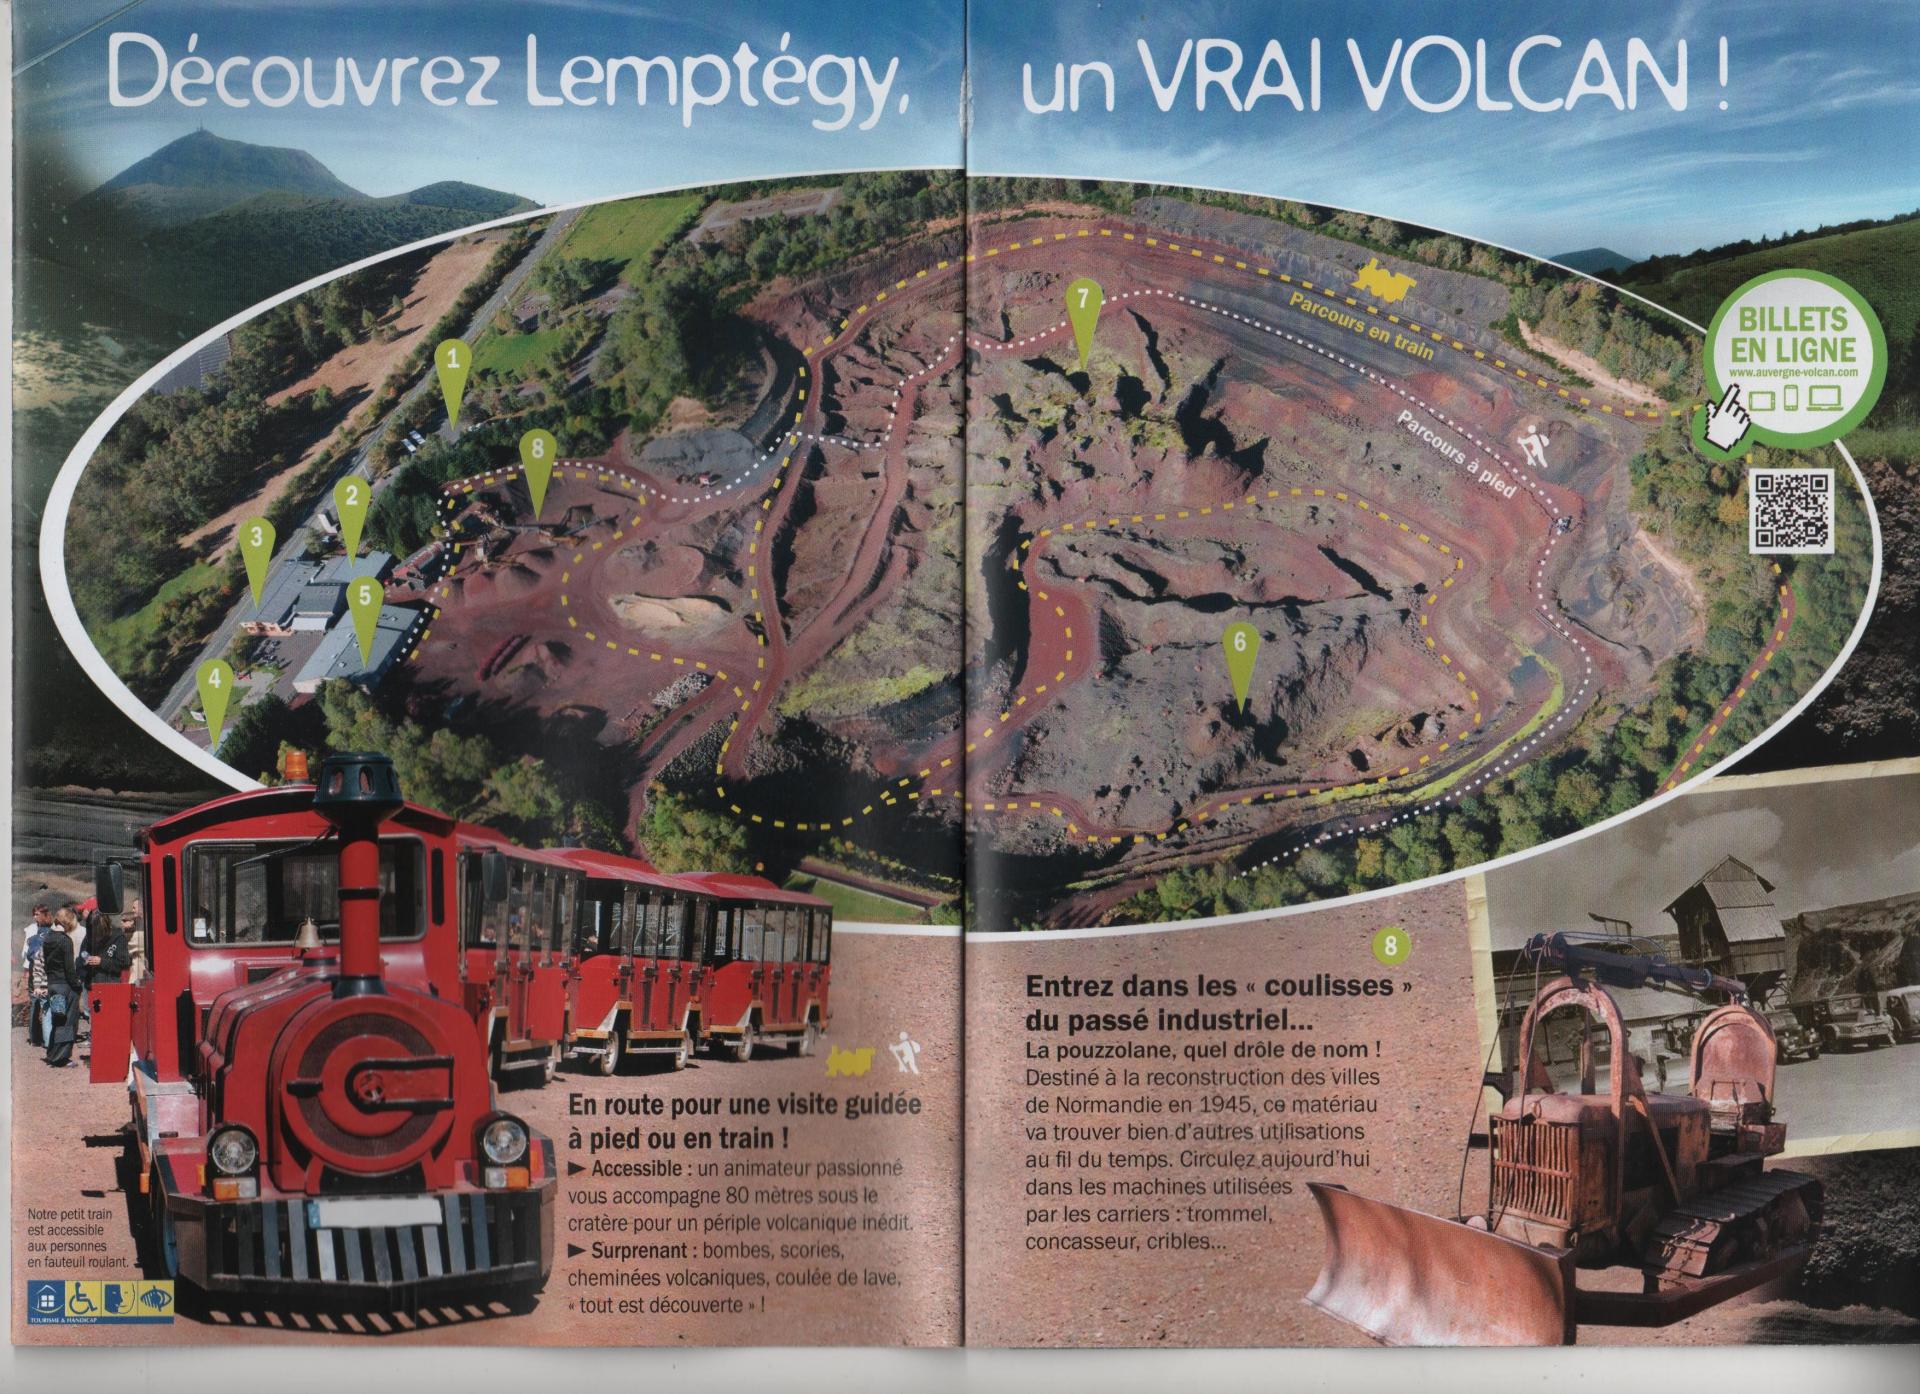 Le volcan de Lemptegy